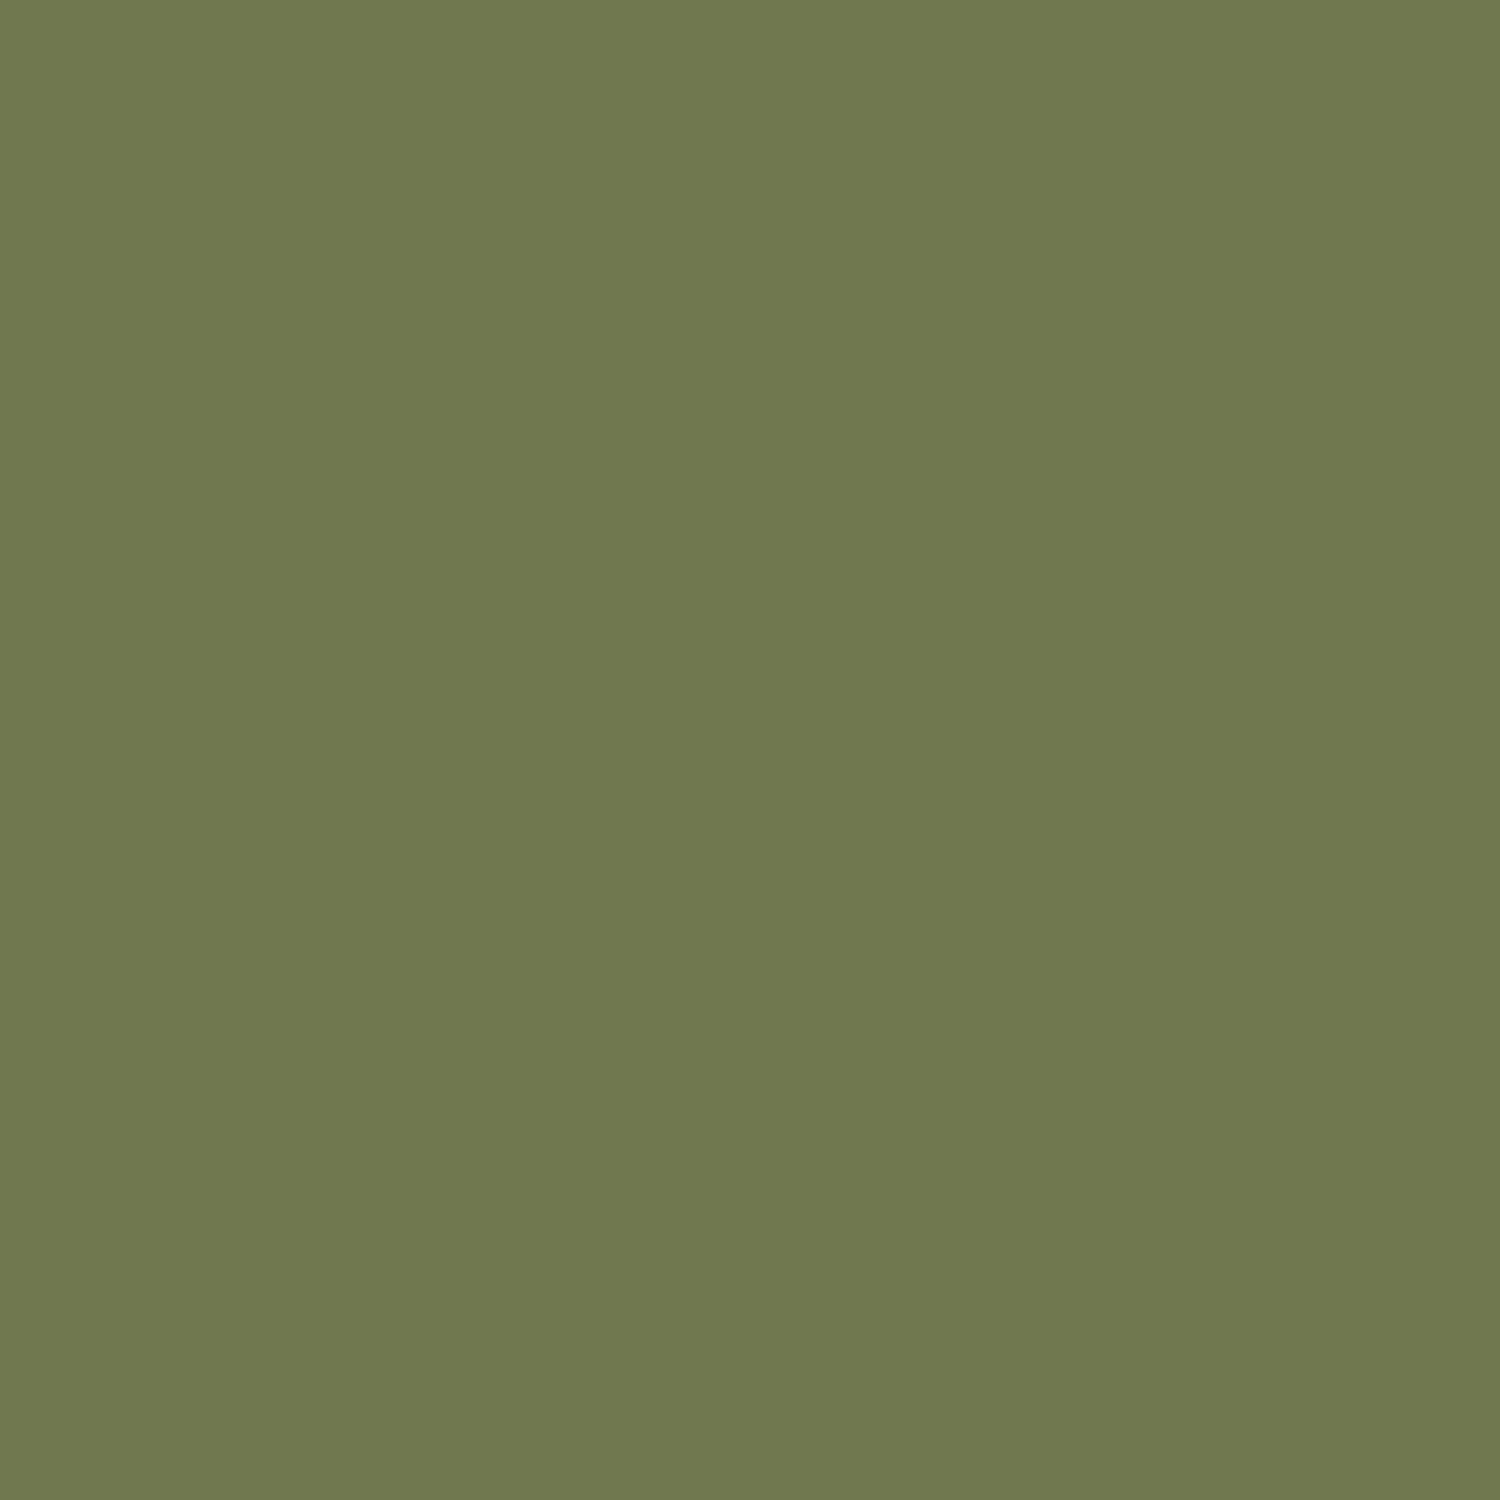 Seaweed Green